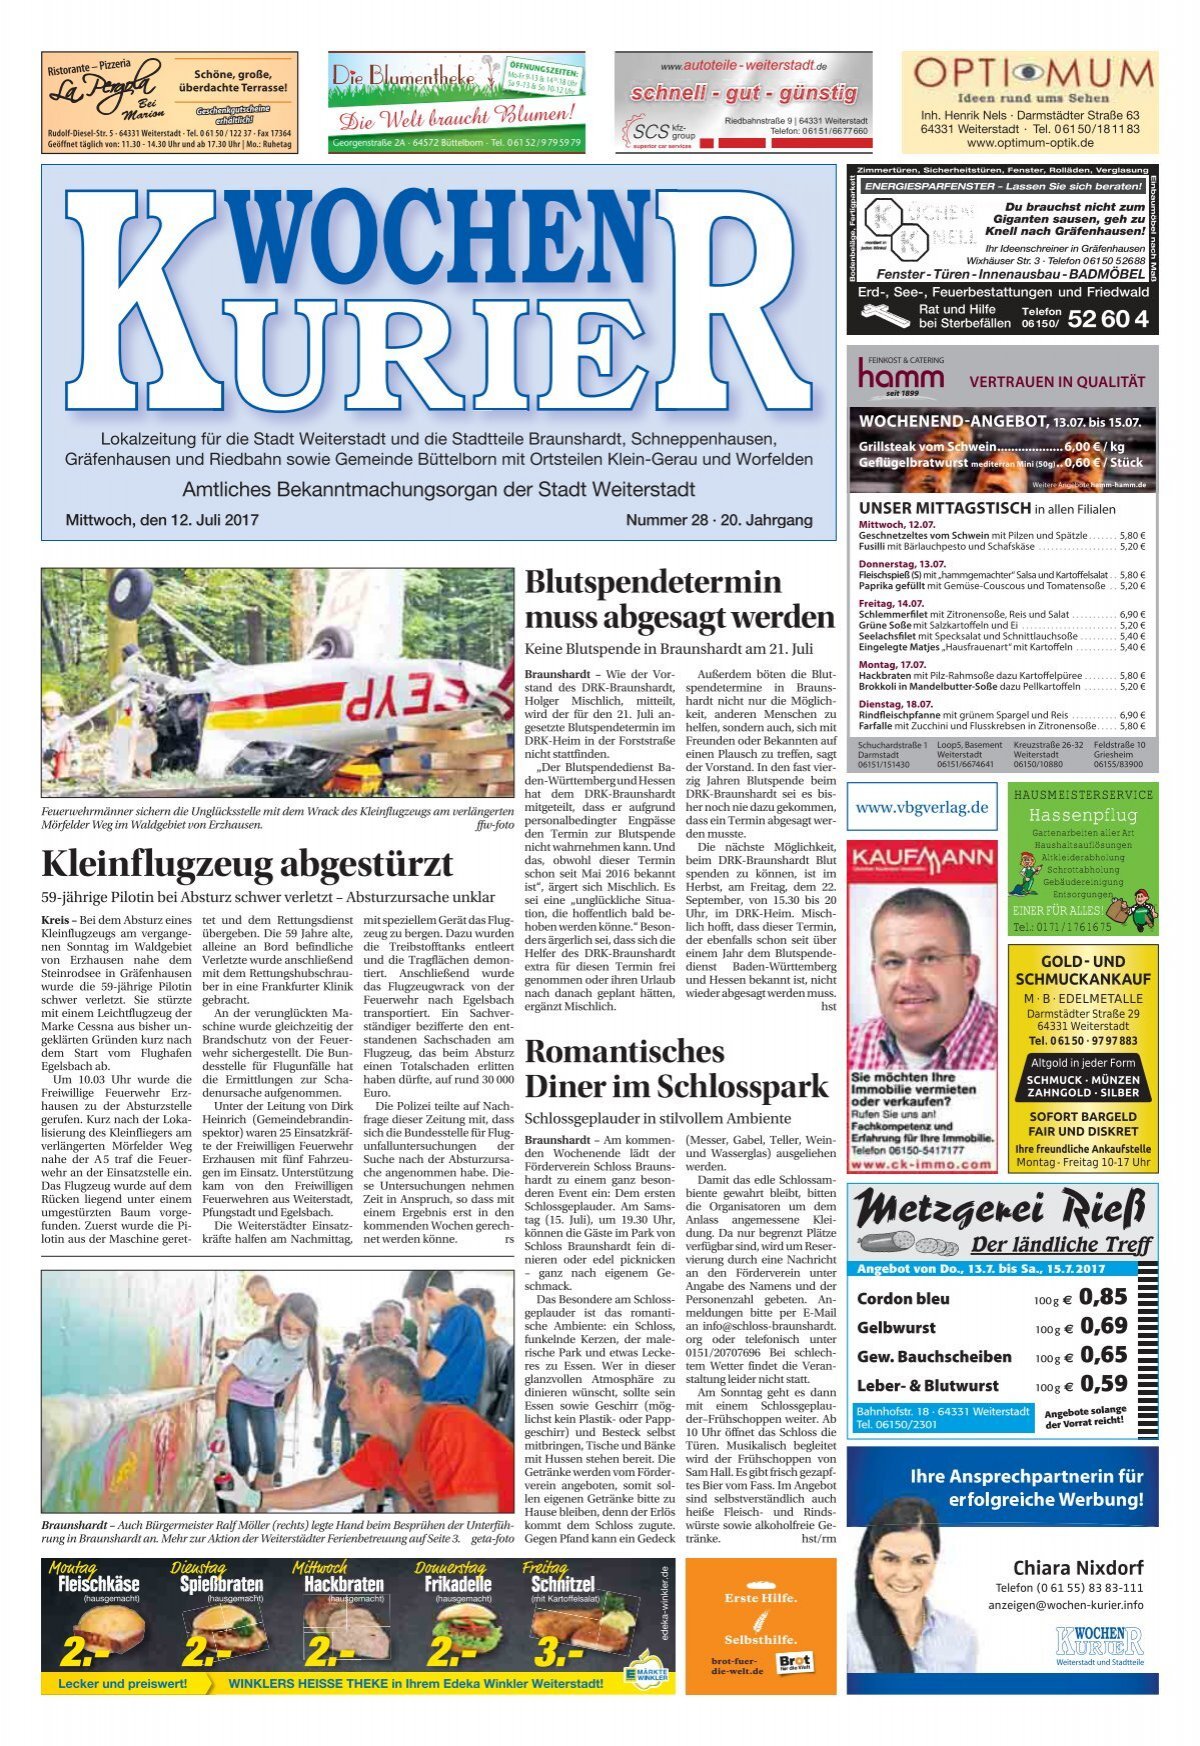 Wochen-Kurier 28/2017 - Lokalzeitung für Weiterstadt und Büttelborn